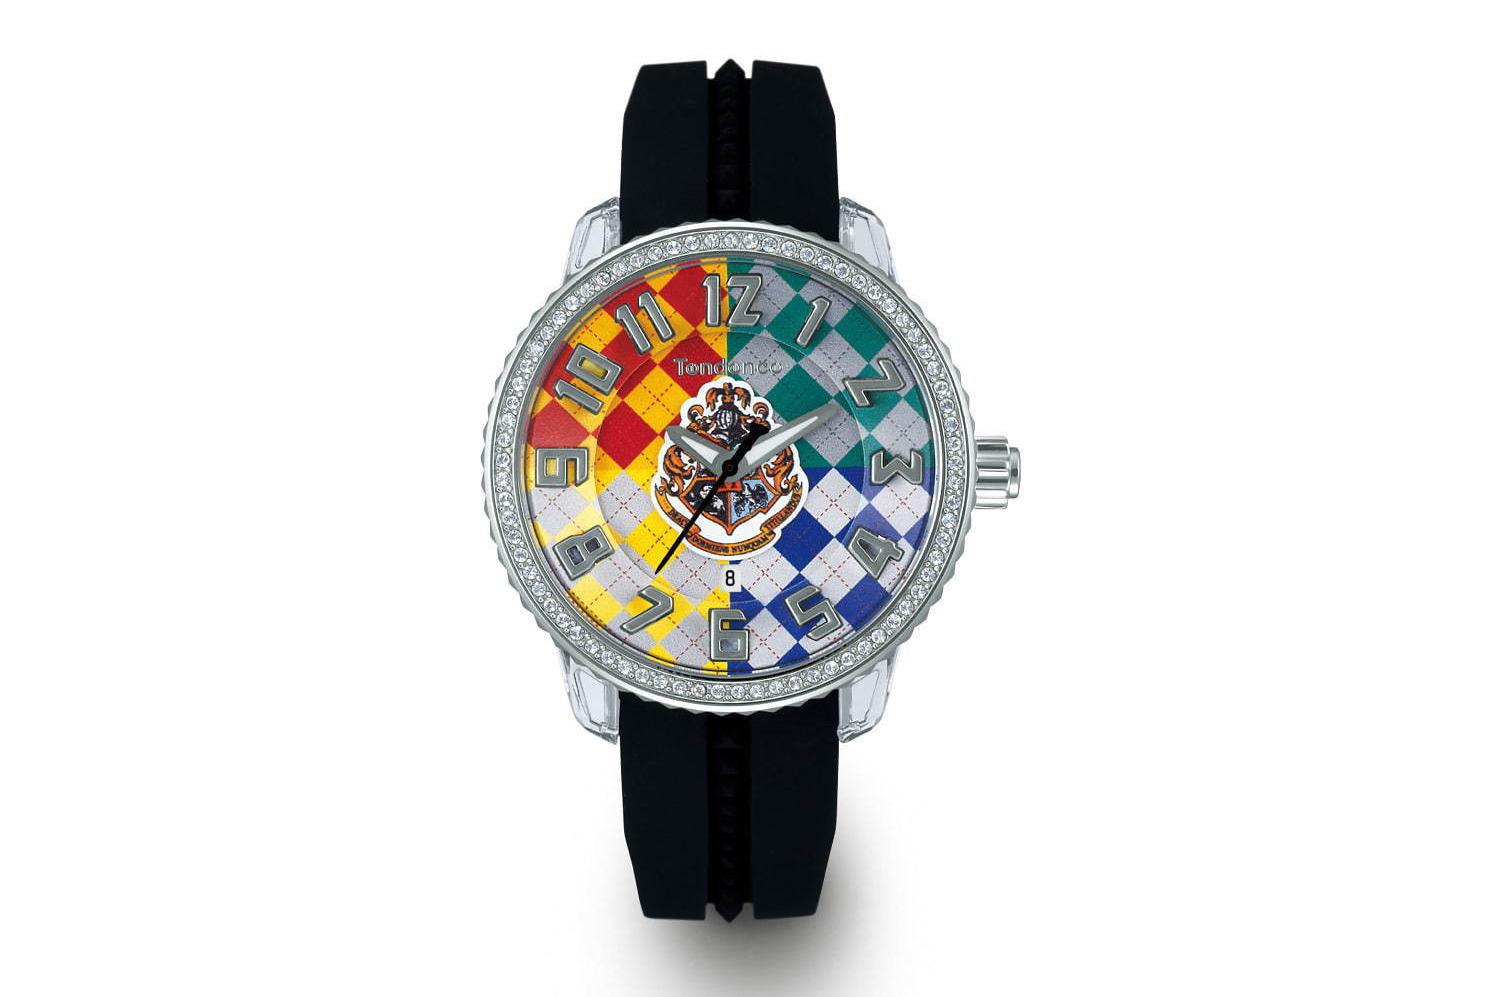 テンデンス×「ハリー・ポッター」の腕時計、魔法の杖の秒針やホグワーツのエンブレムデザイン 